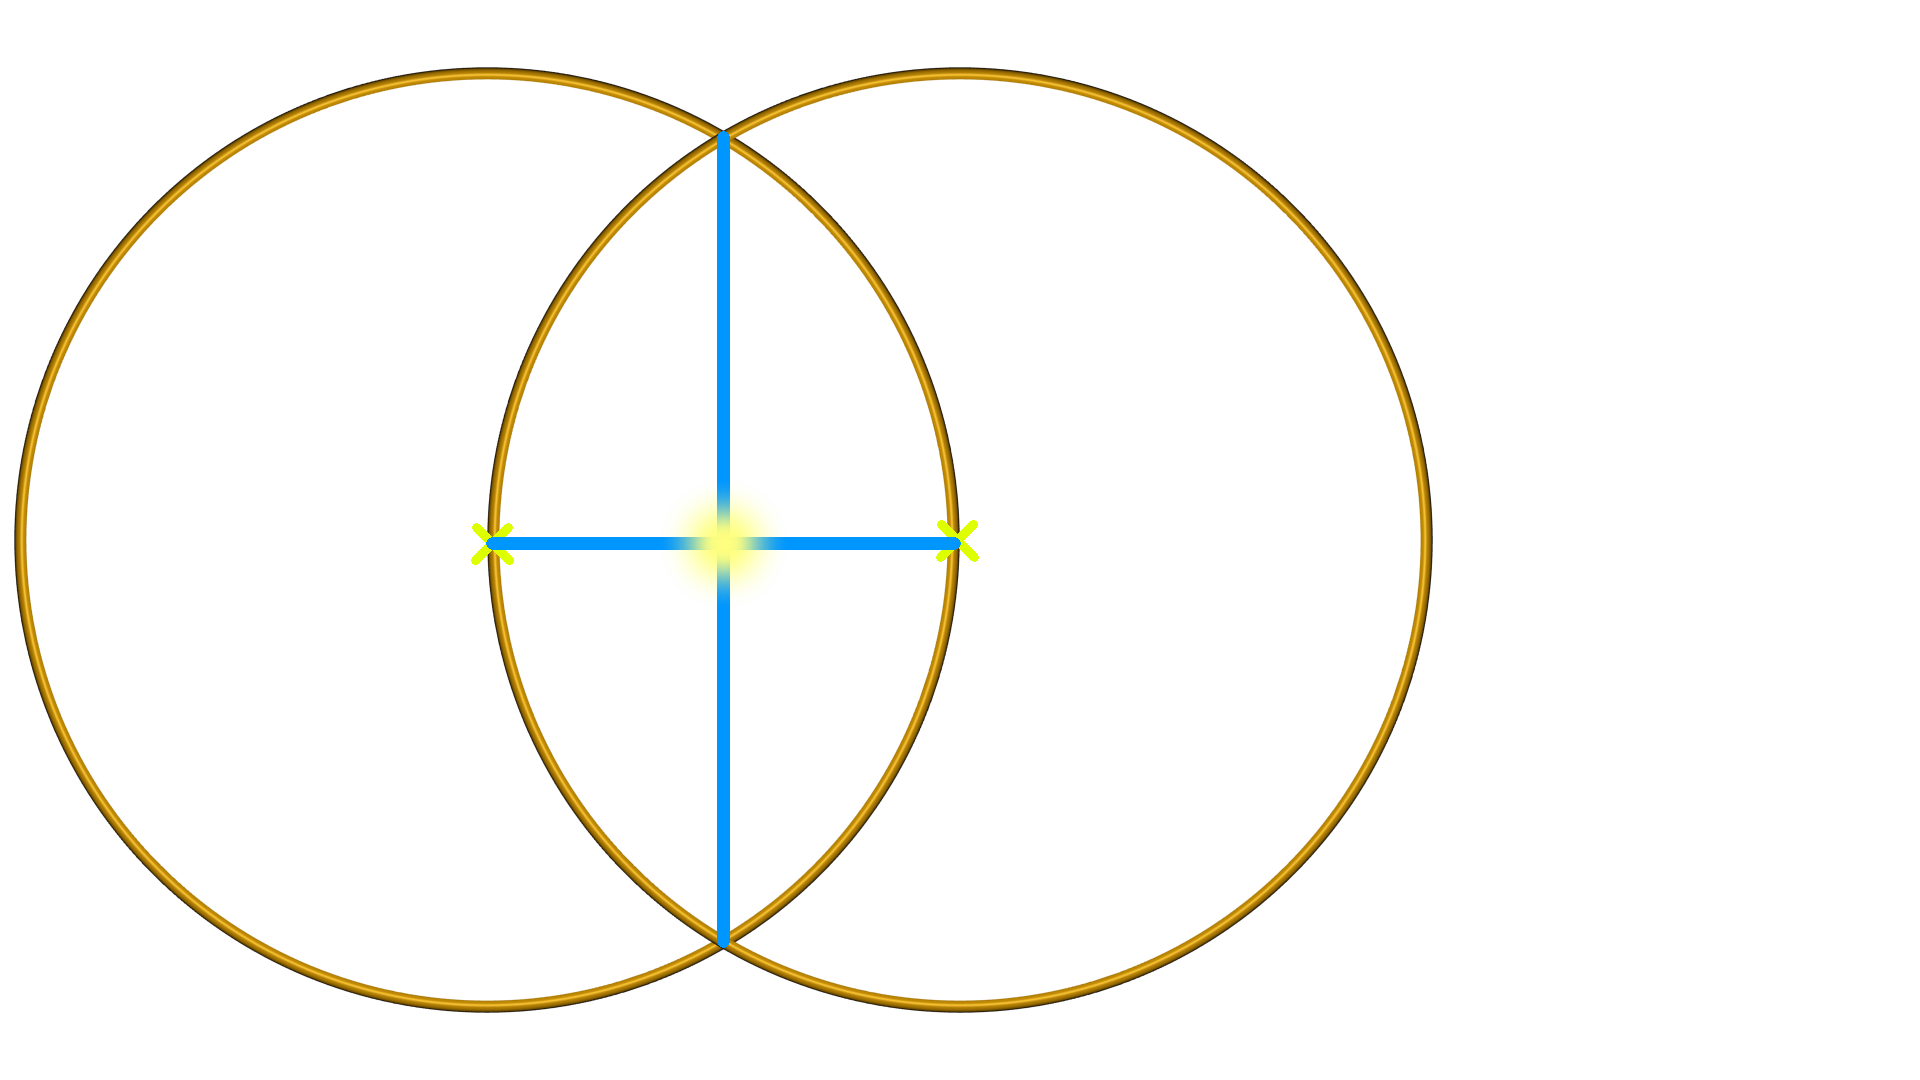 Bild von der Visica Piscis, welche sich auch als Fischauge bezeichnet. Die Visica Piscis bildet sich aus zwei überlappenden Kreisen. In diesem Bild ist auch der Quellpunkt des Schöpfung.